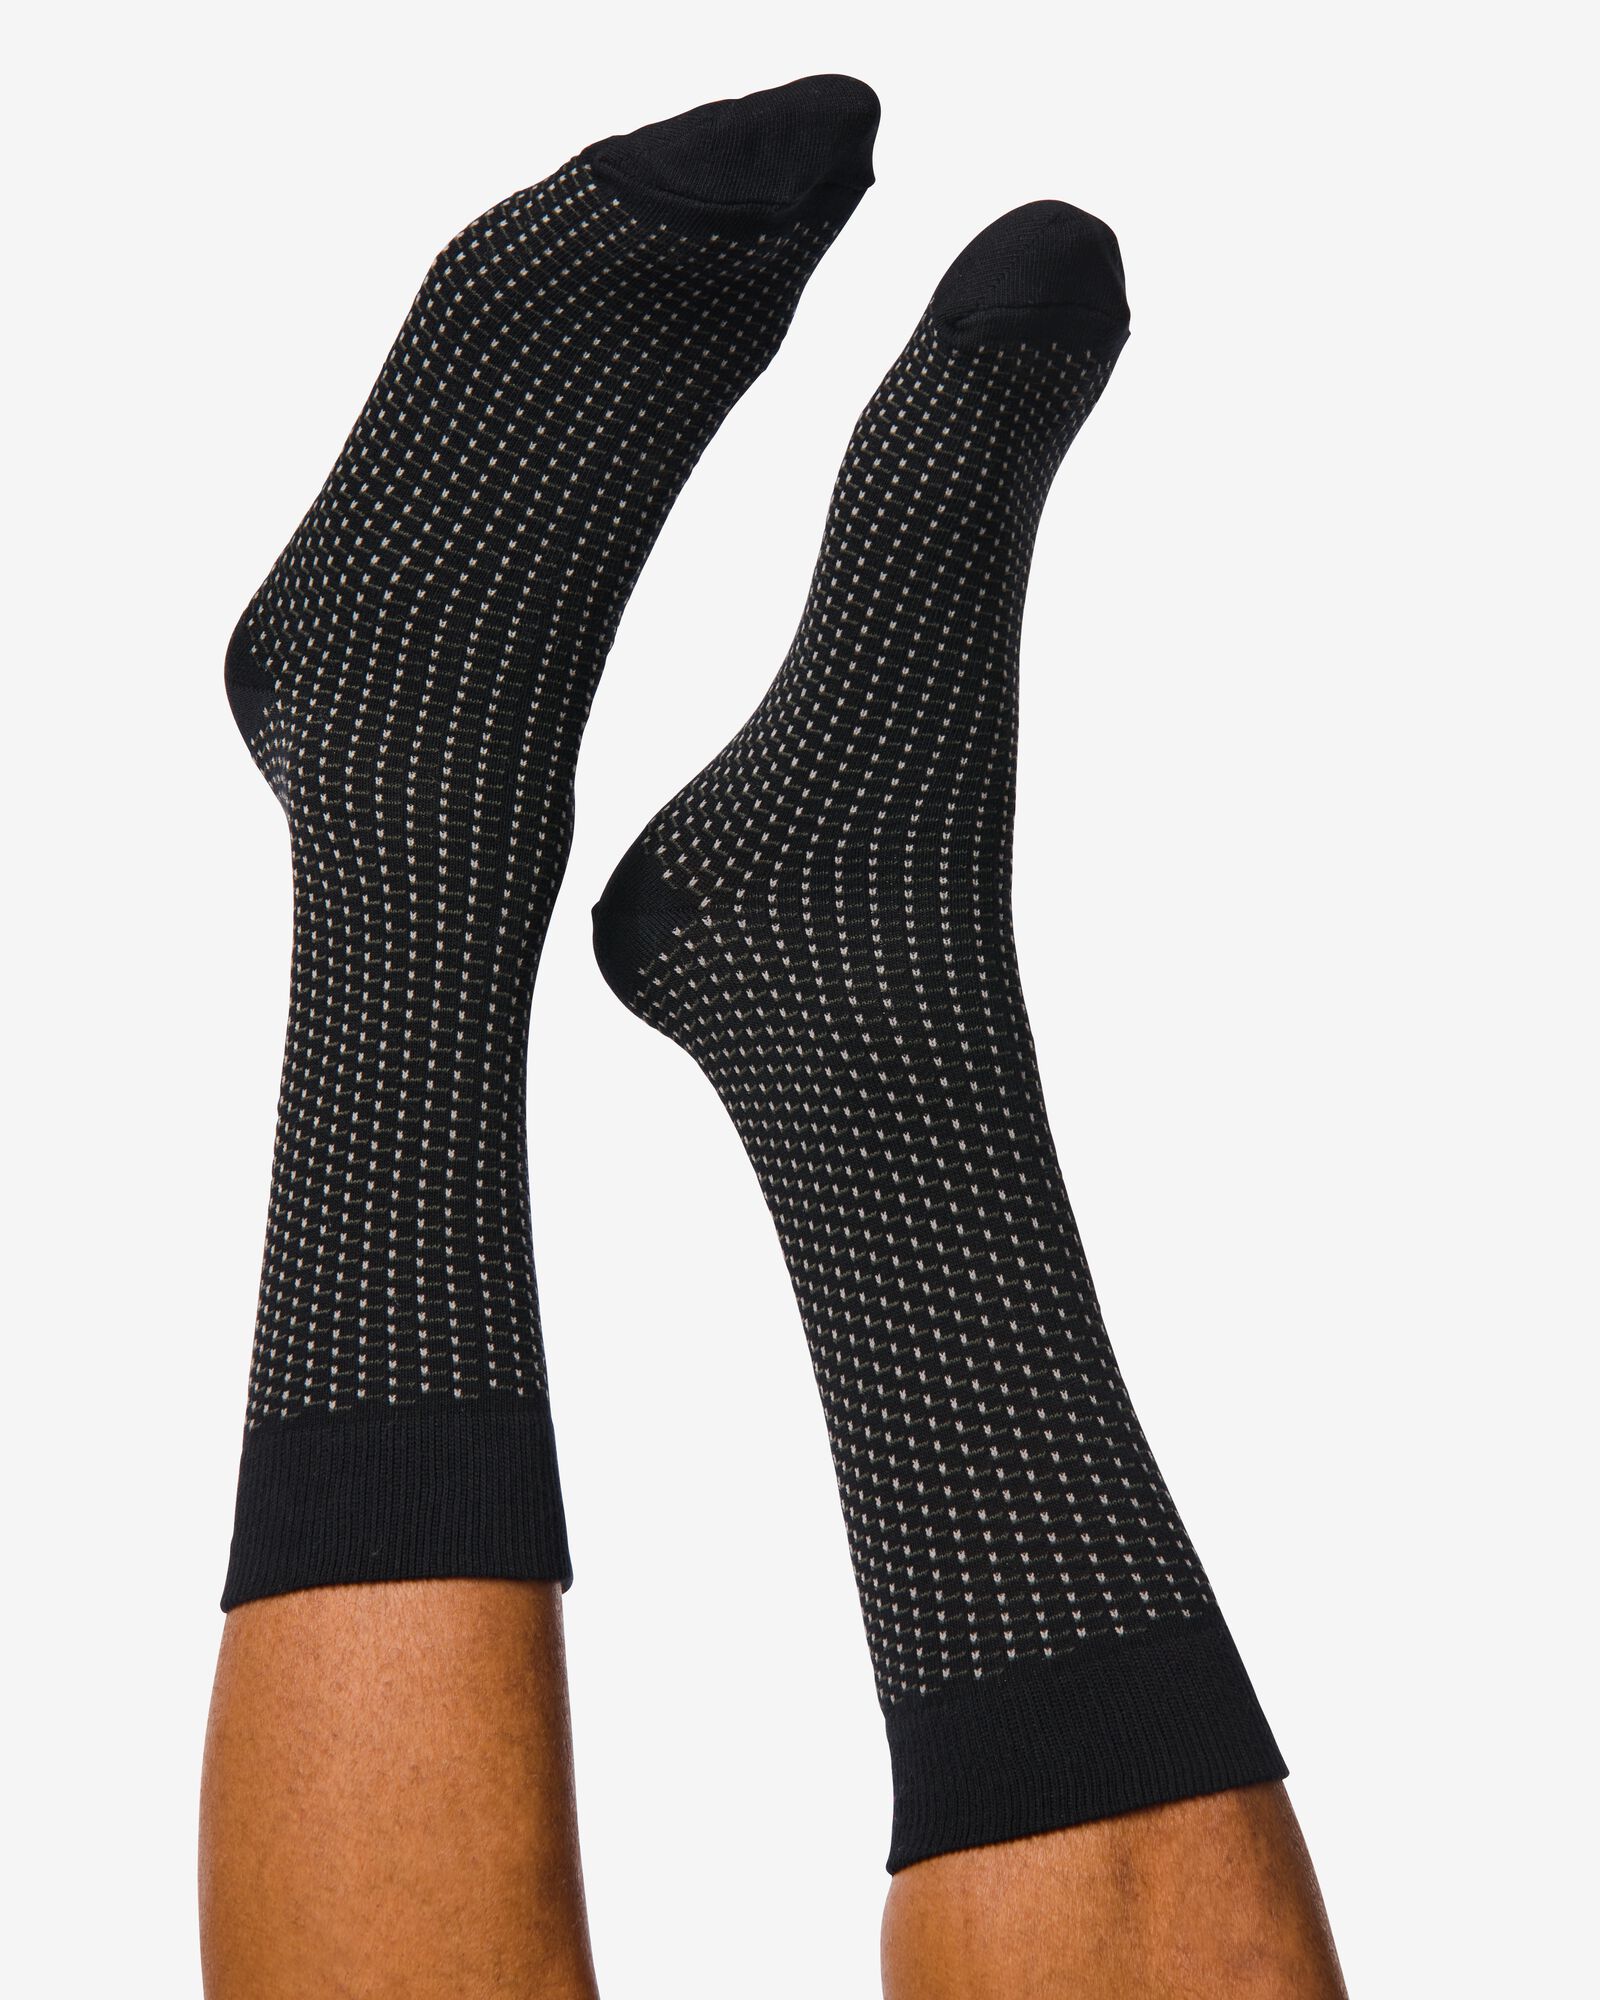 5 paires de chaussettes homme avec coton noir noir - 4130730BLACK - HEMA